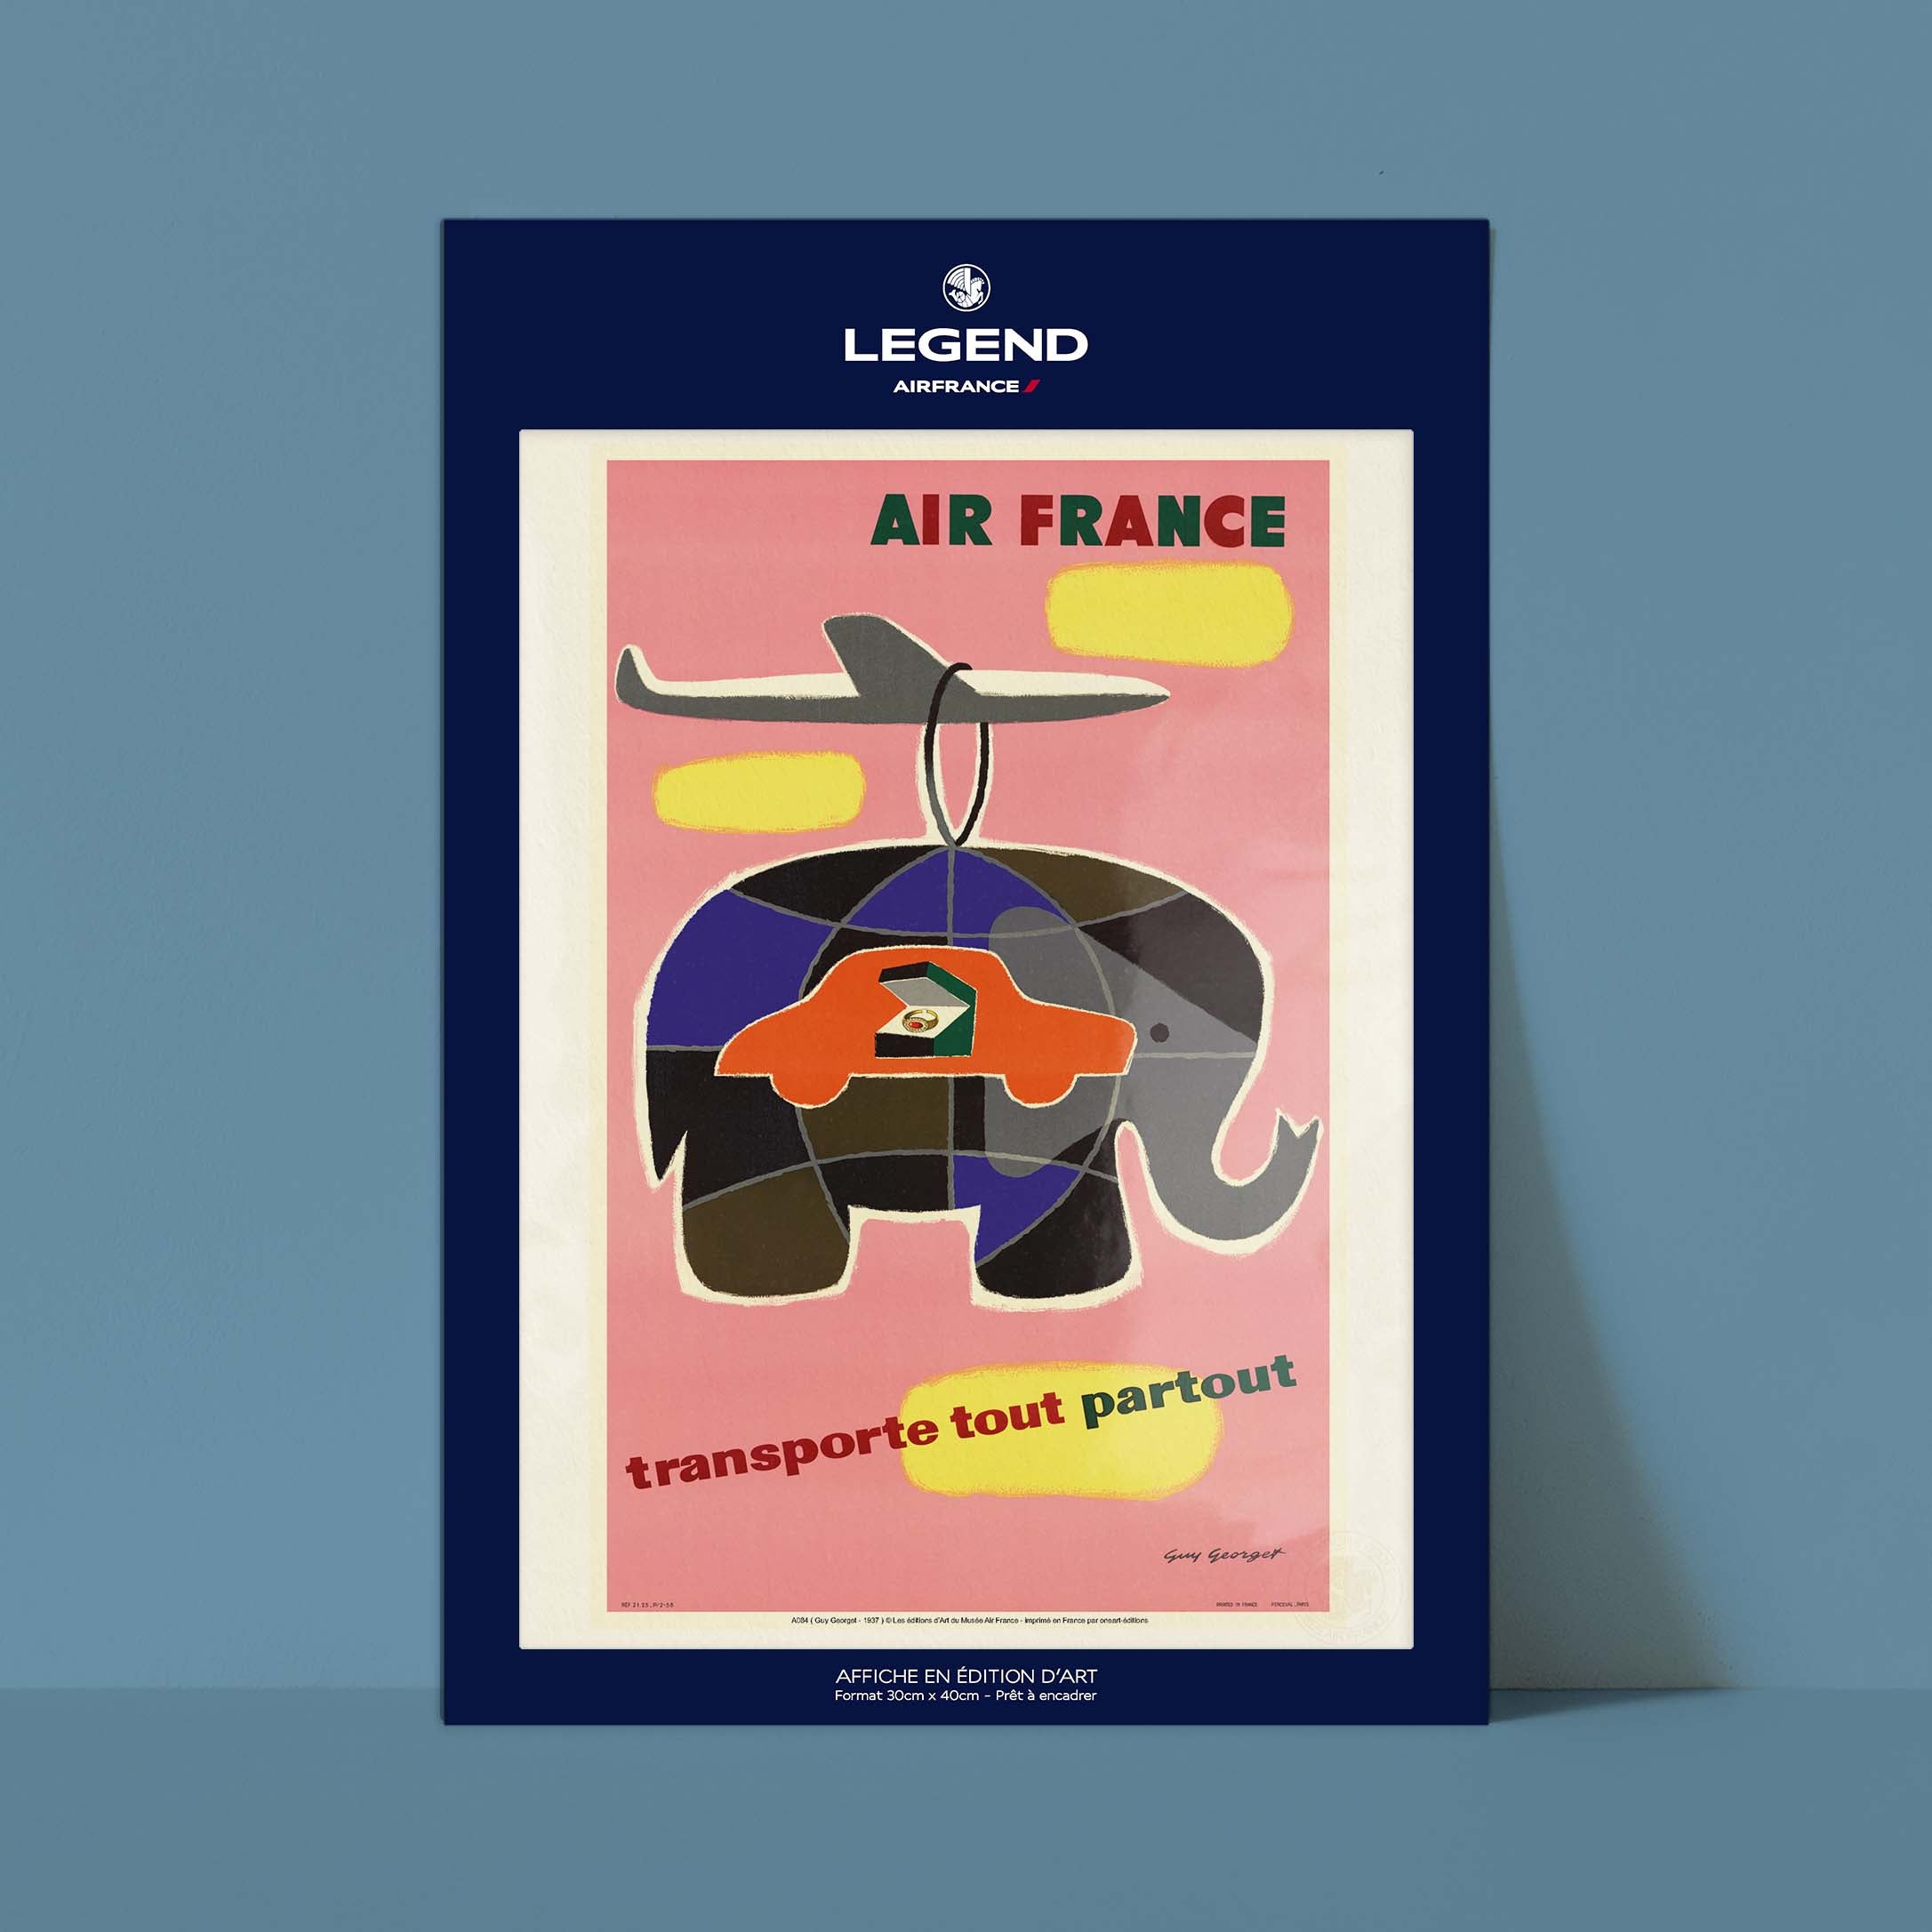 Affiche Air France - Transporte tout, partout-oneart.fr